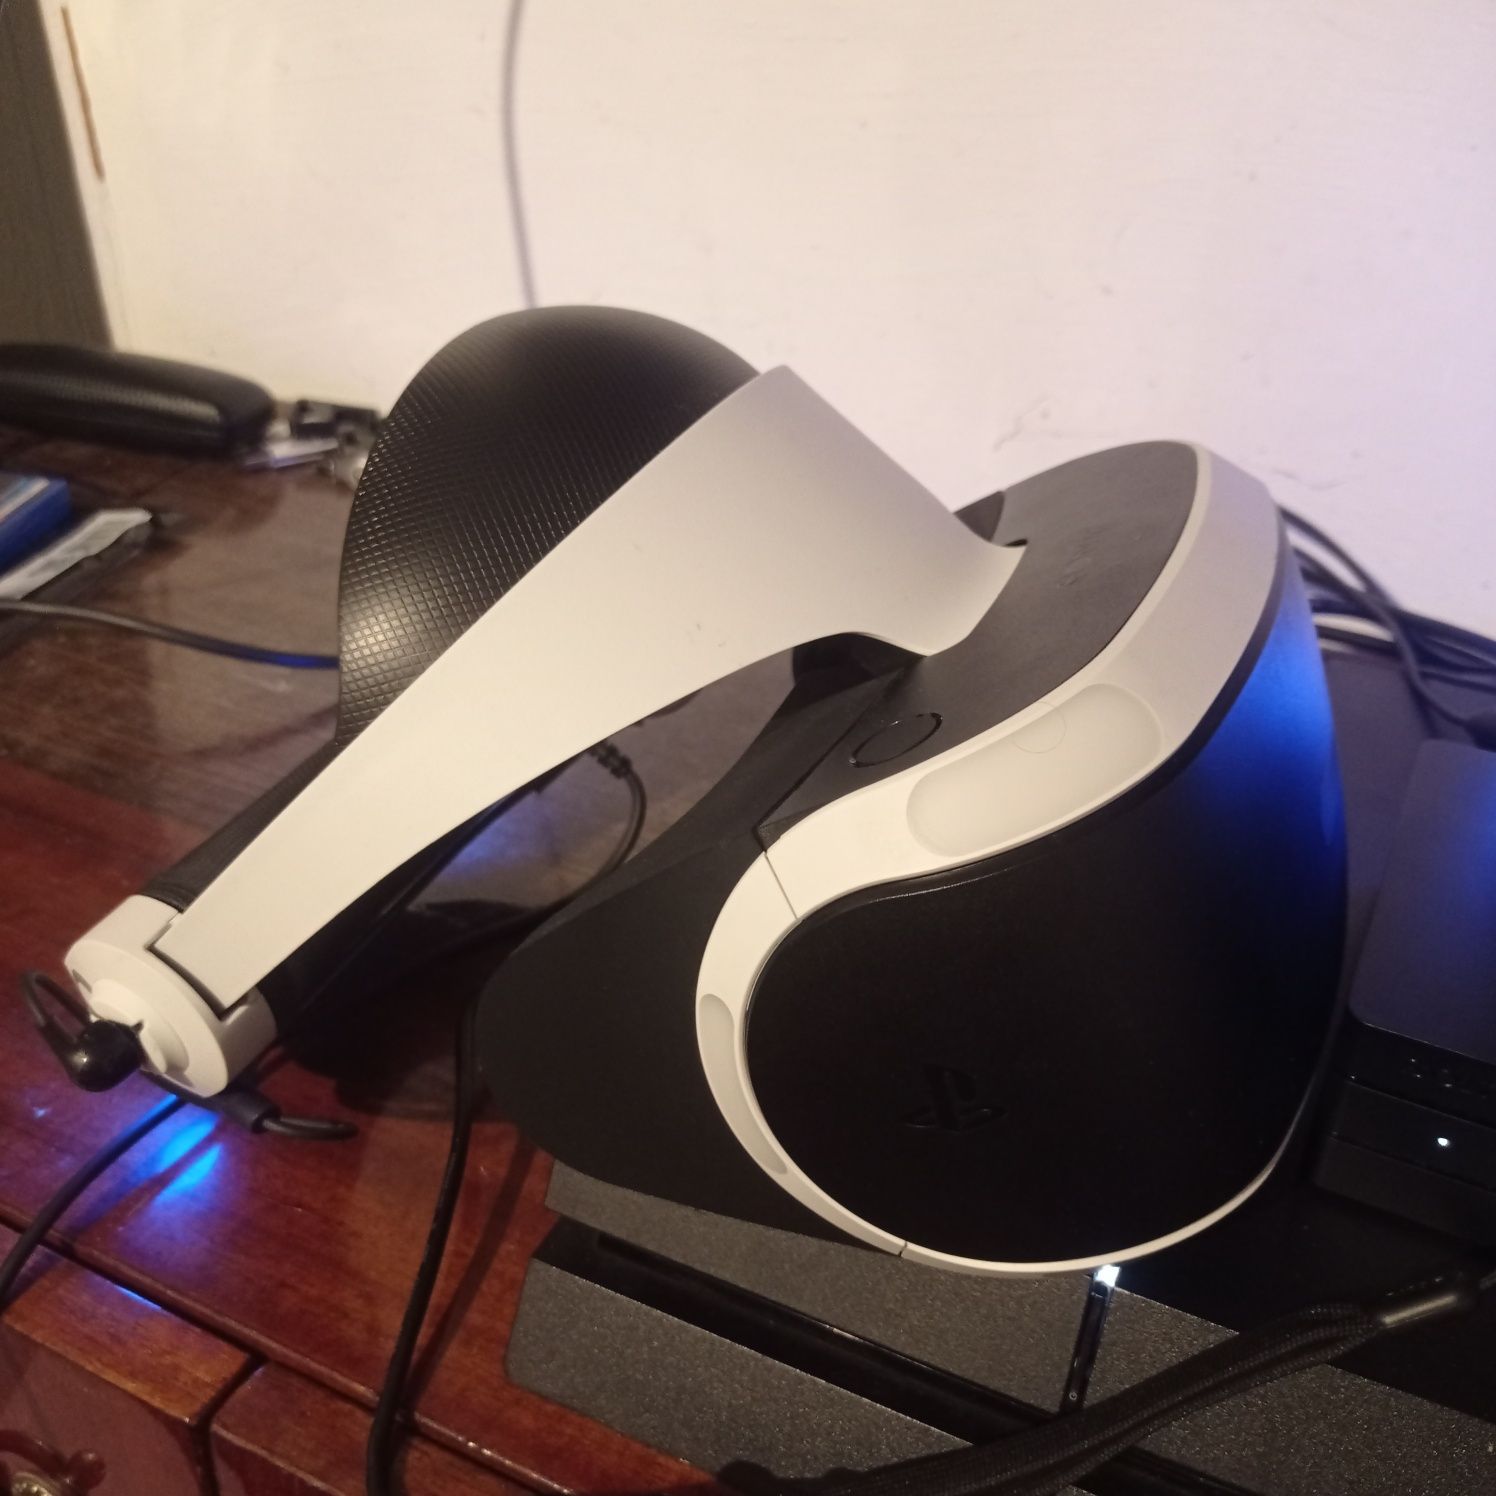 PS4 VR друга ревізія. Як новий !